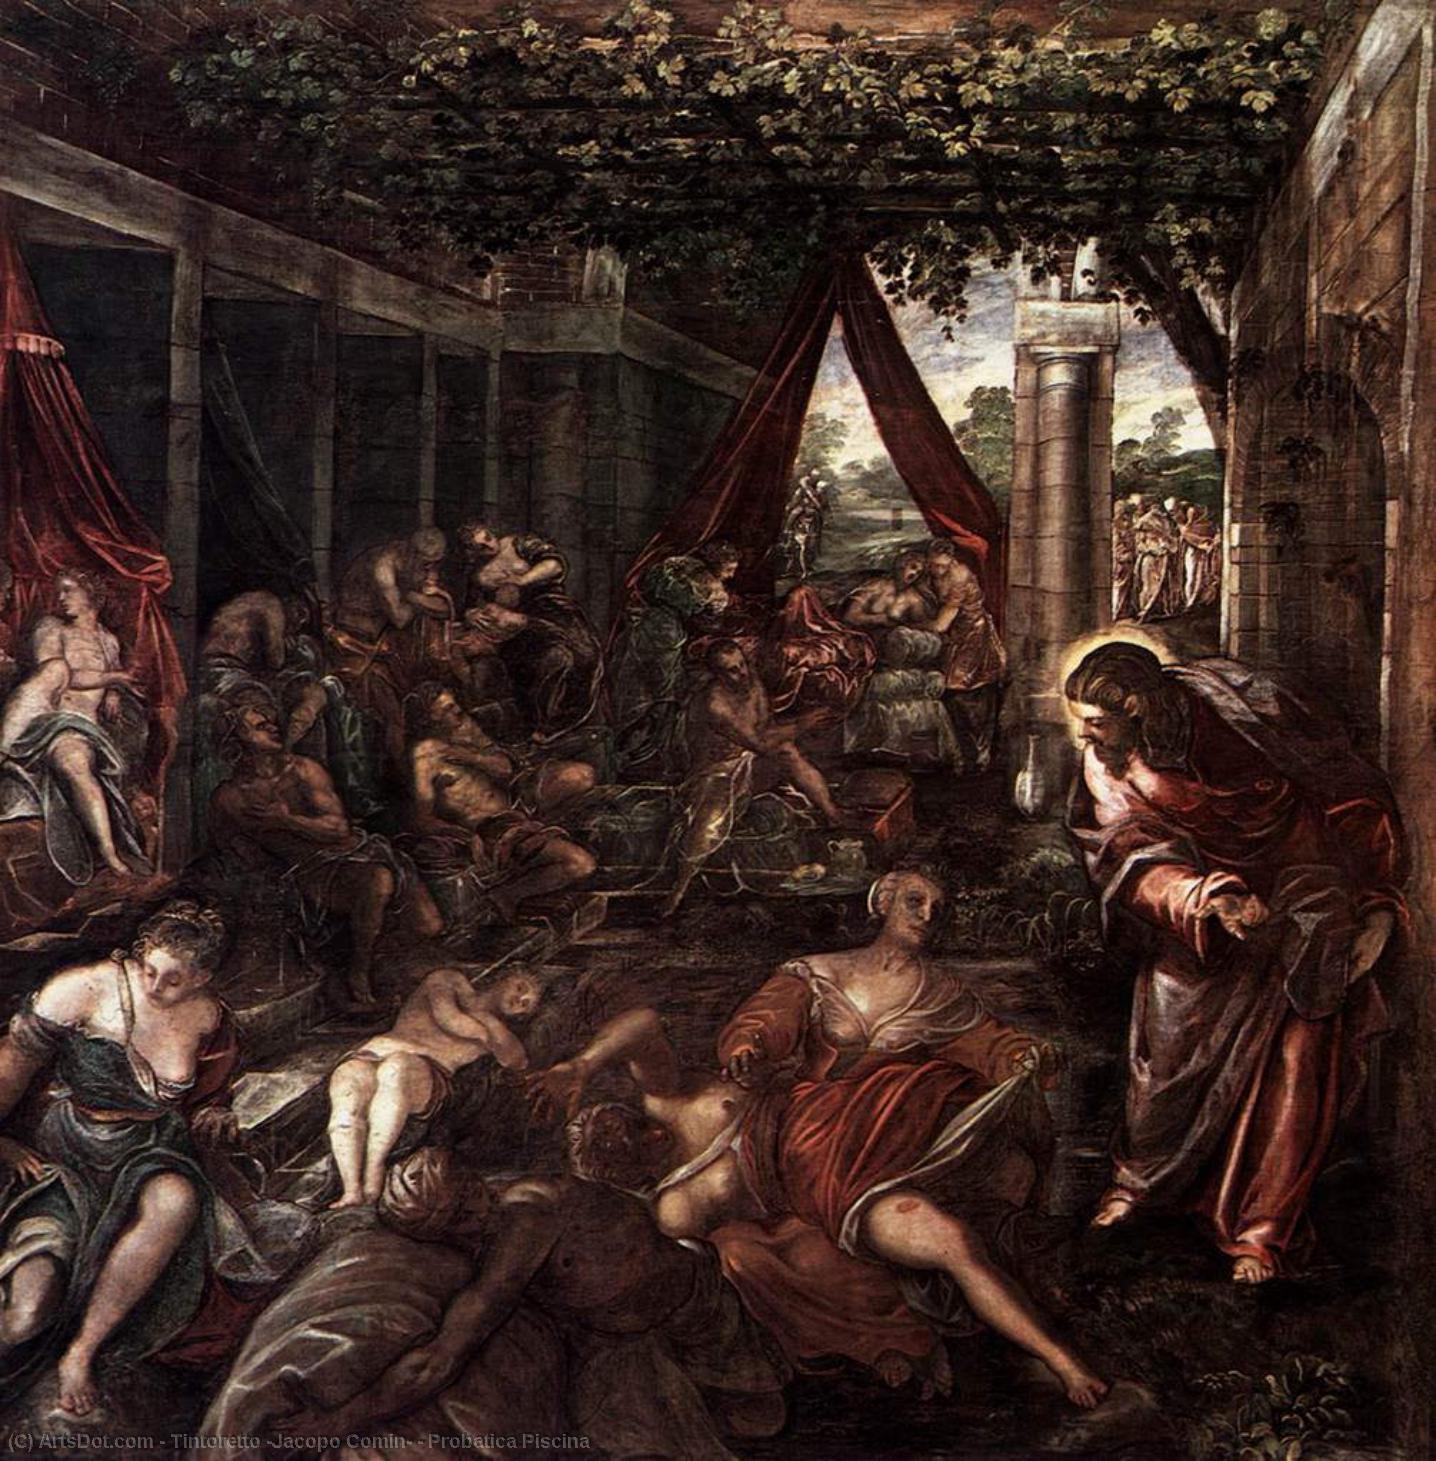 Compre Museu De Reproduções De Arte Probatica de Saúde, 1559 por Tintoretto (Jacopo Comin) (1518-1594, Italy) | ArtsDot.com